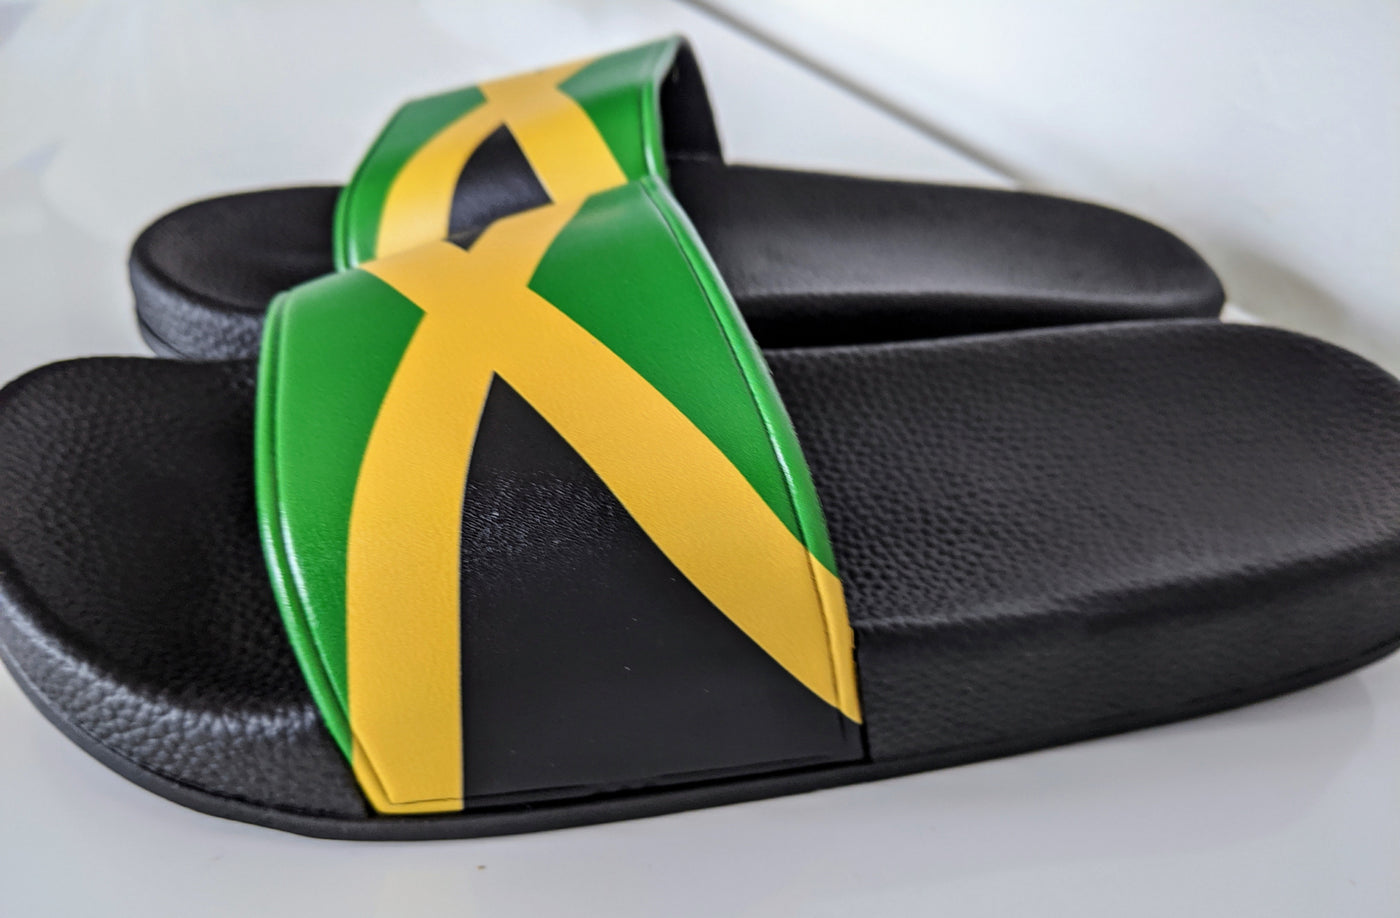 Jamaica Flag Sliders - Black Sole